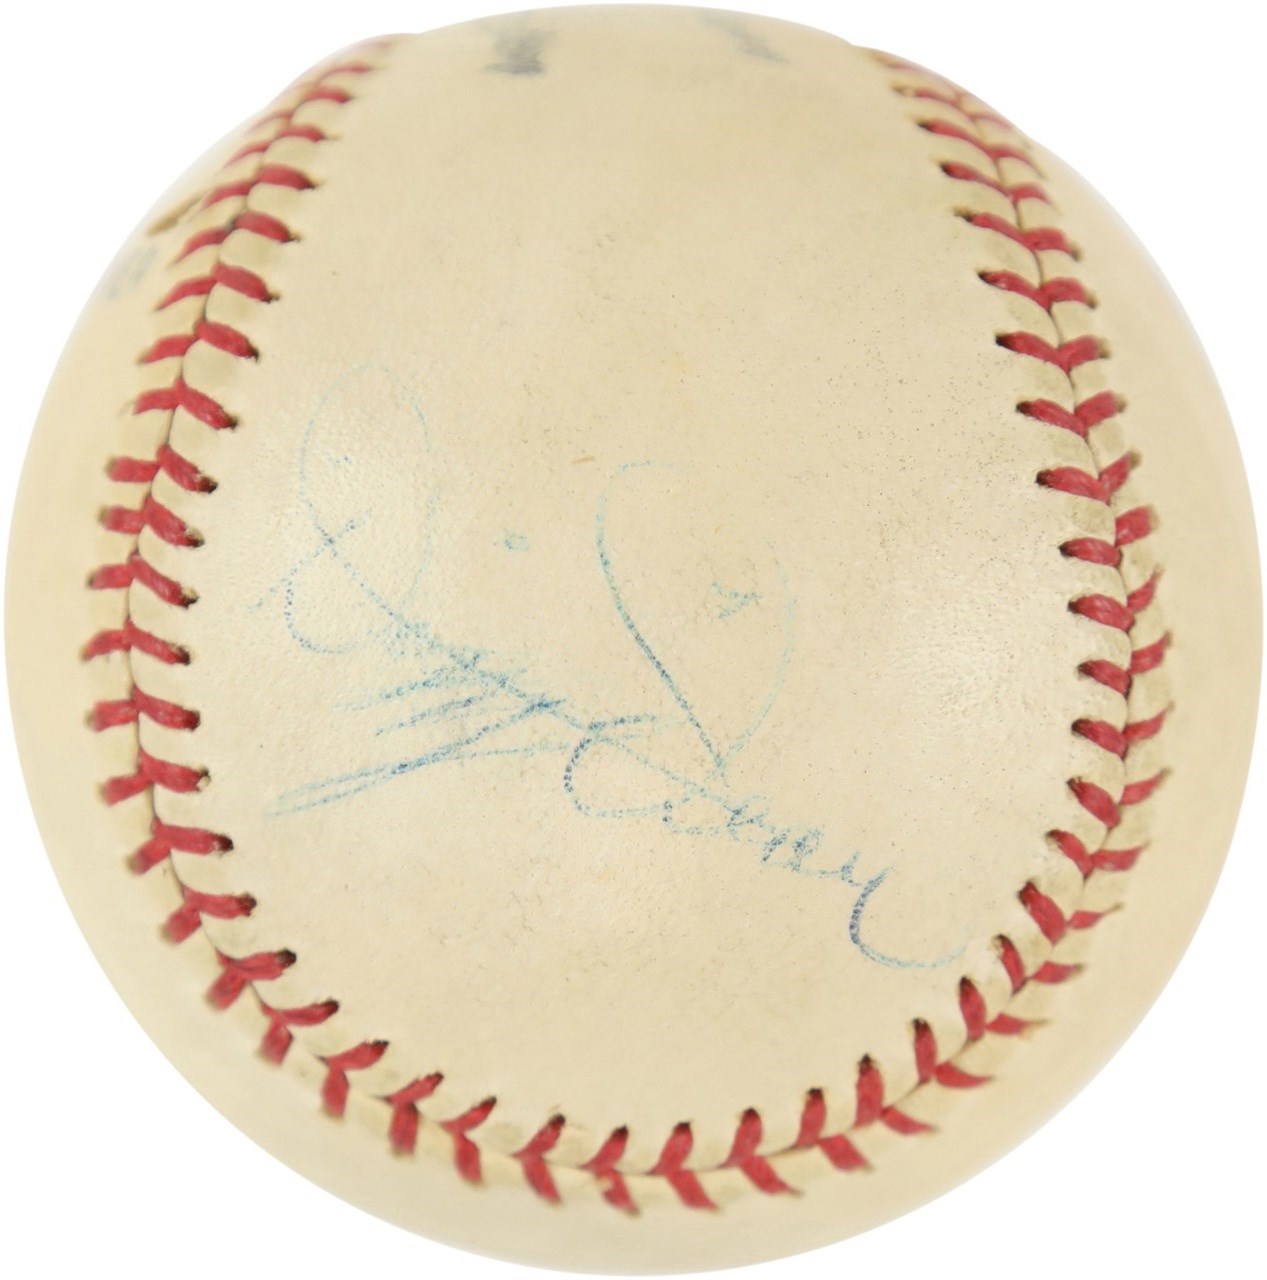 - 1950s Dizzy Dean Single Signed Baseball (PSA & JSA)